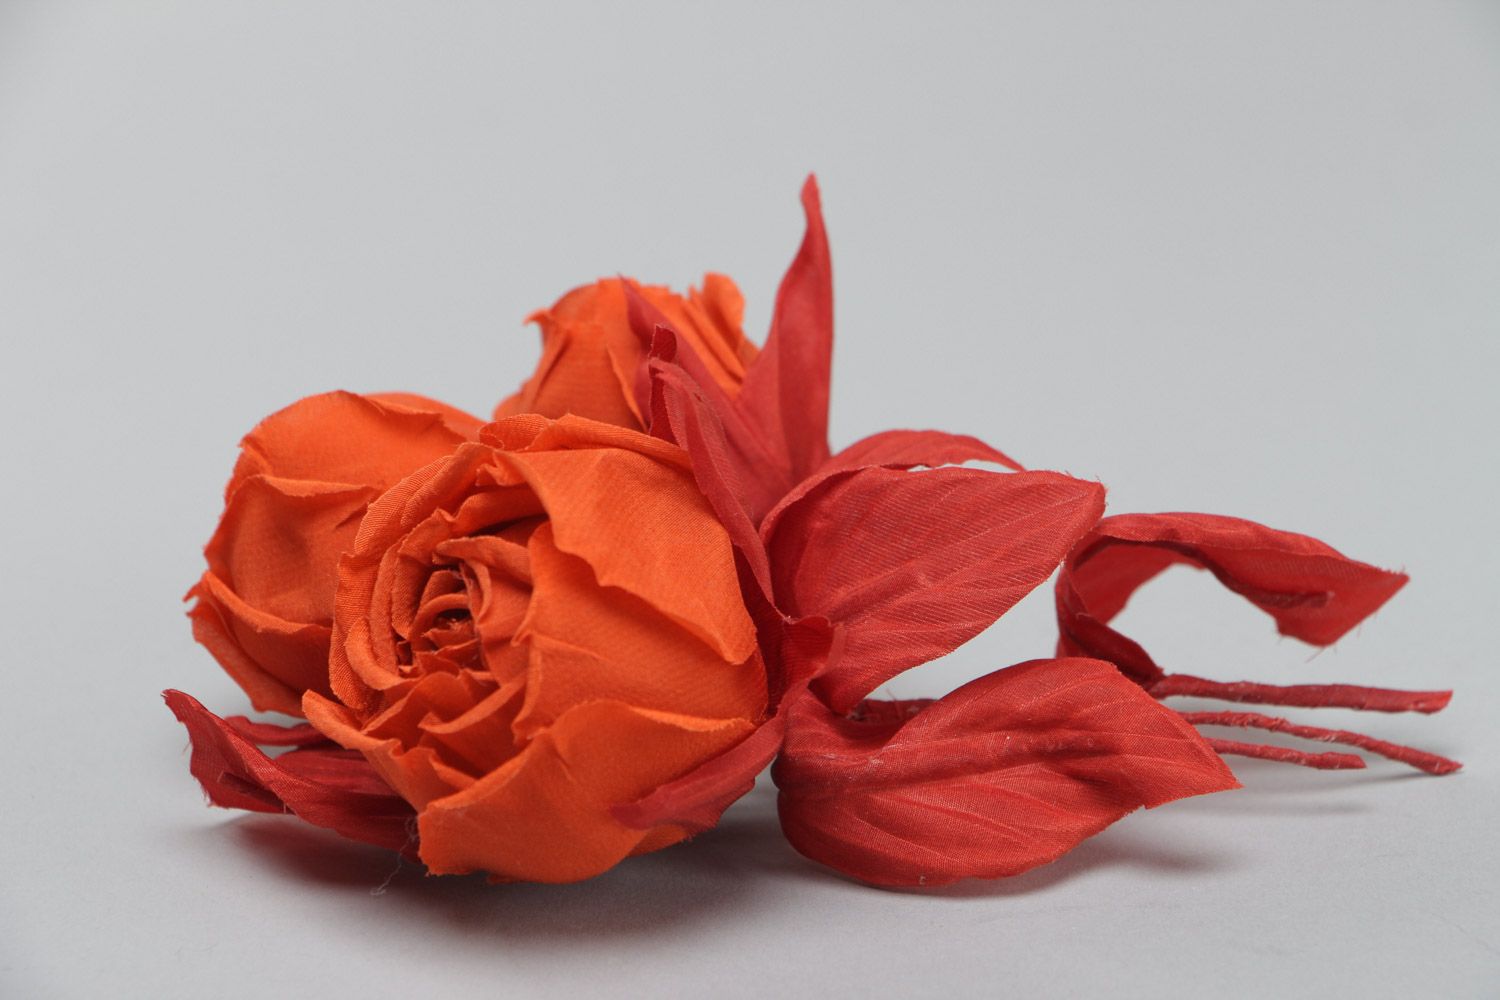 Брошь цветы из ткани красные розы яркая крупная необычная красивая ручной работы фото 3